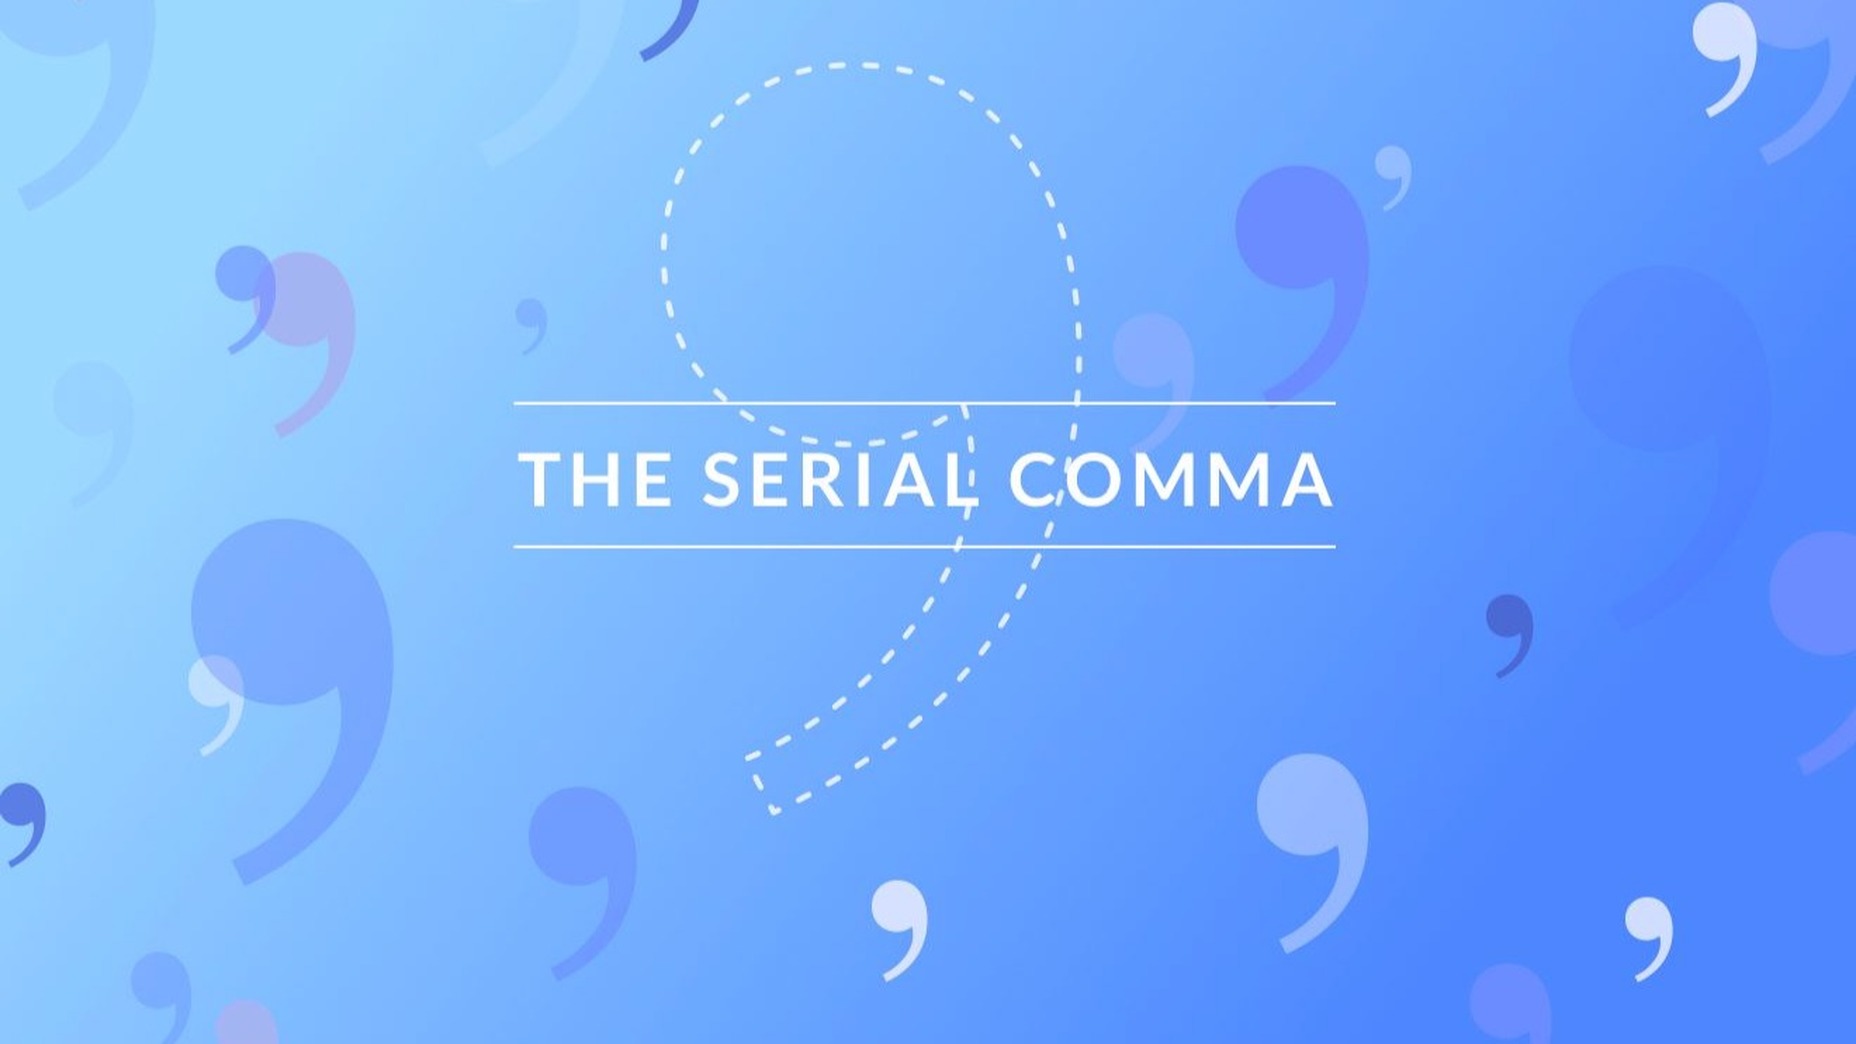 serial comma